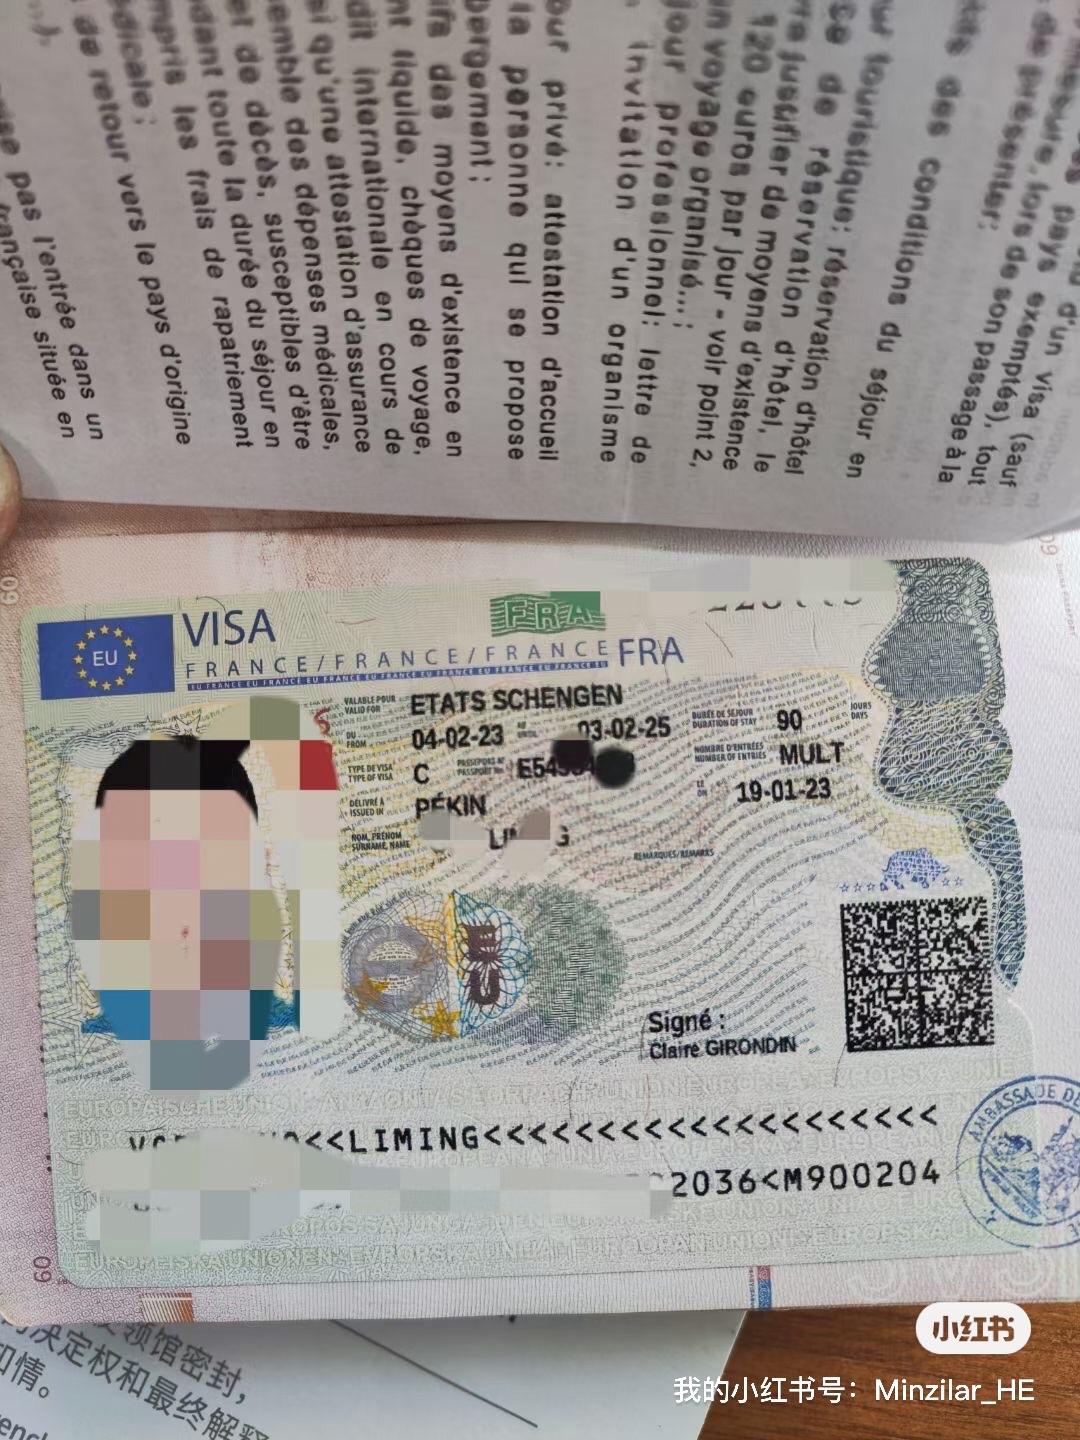 法国留学生签证大使馆给错长期临时签证vlst是如何转成长期学生居留签VLS TS攻略 - 知乎